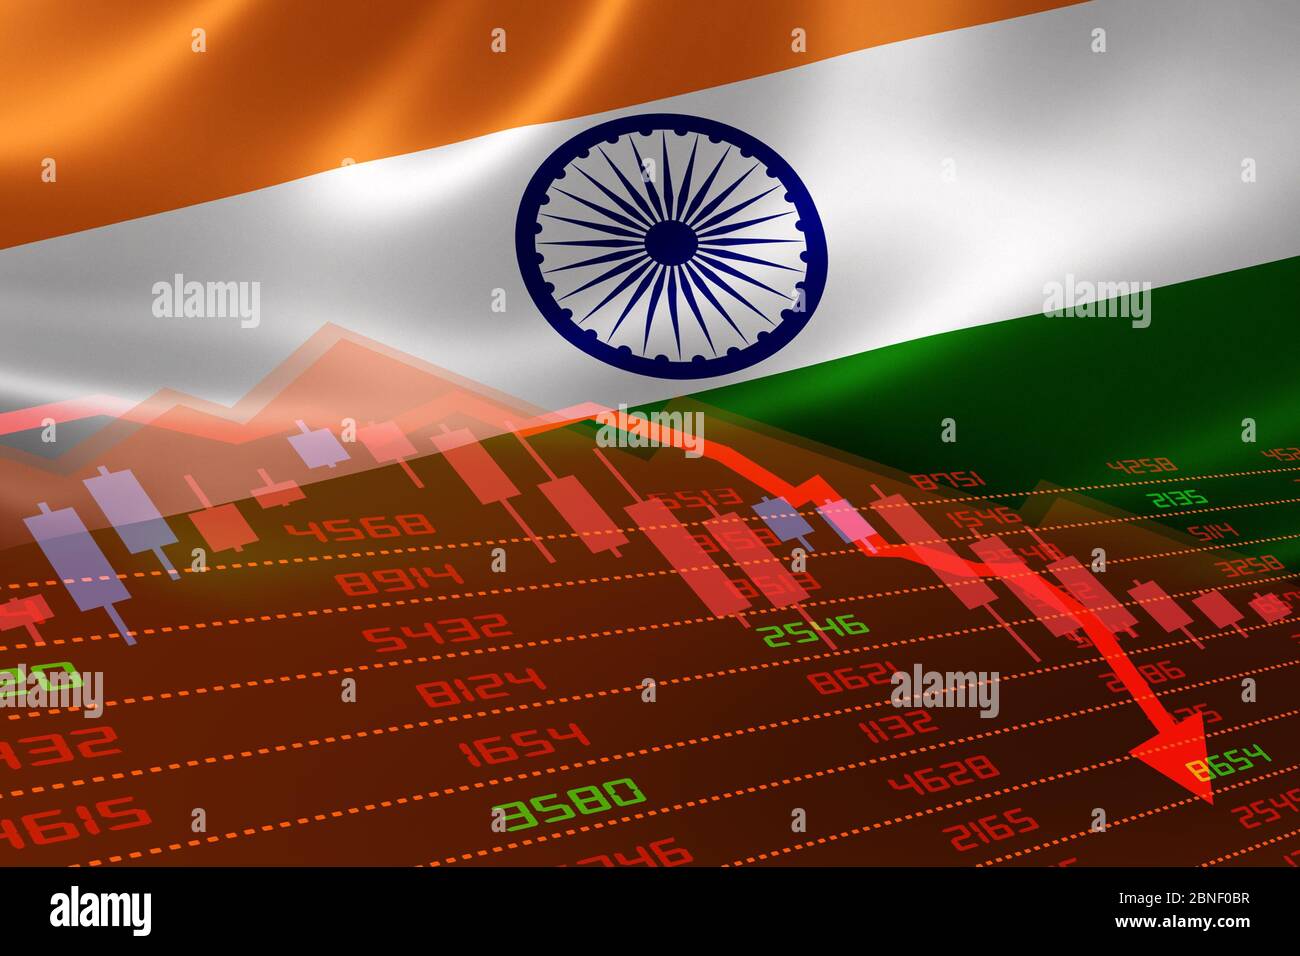 La récession économique de l'Inde avec la bourse des valeurs en baisse et en territoire rouge négatif. Crise des marchés financiers et financiers Banque D'Images